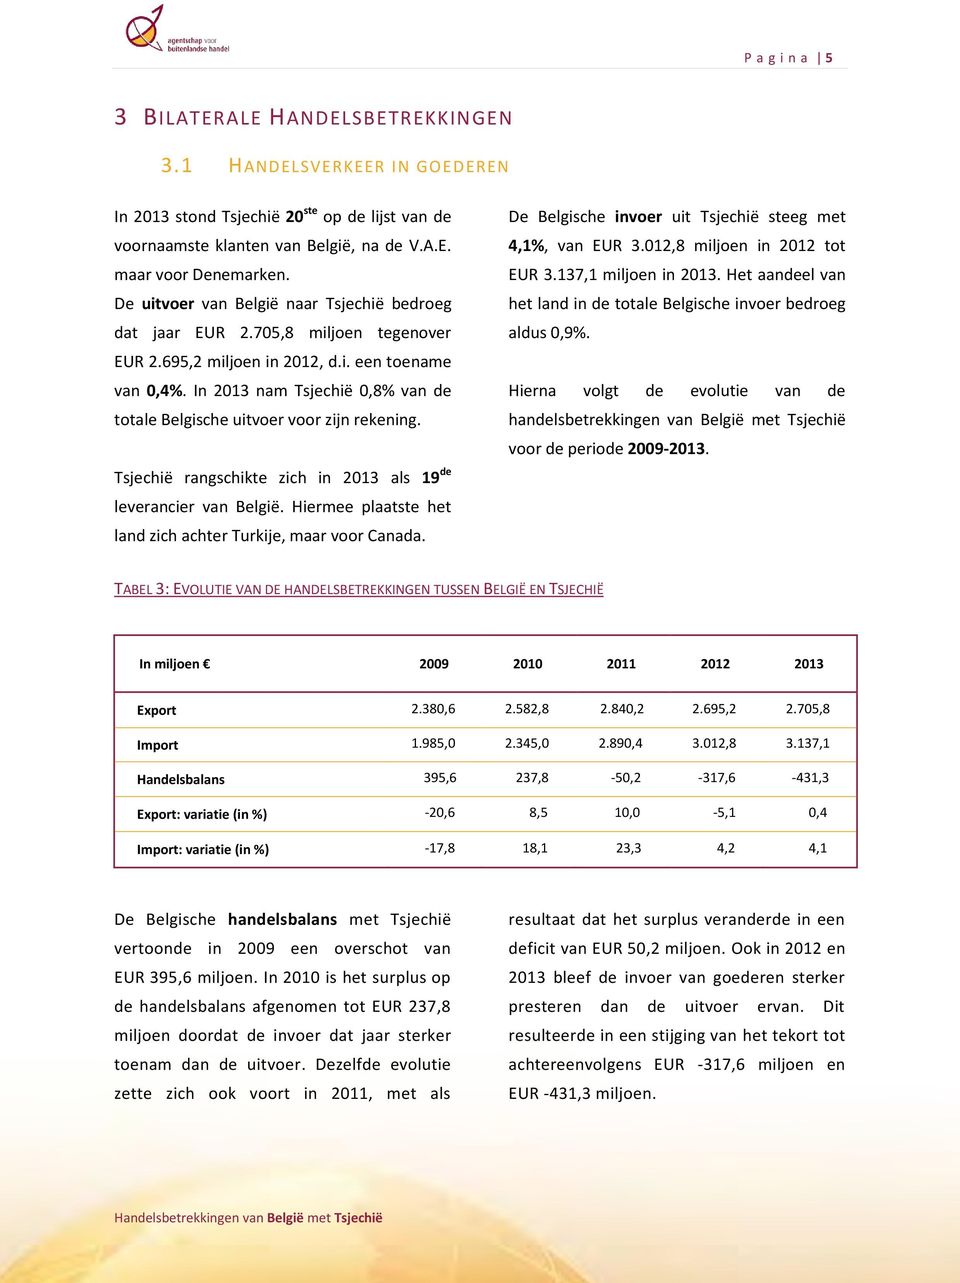 In 2013 nam Tsjechië 0,8% van de totale Belgische uitvoer voor zijn rekening. Tsjechië rangschikte zich in 2013 als 19 de leverancier van België.